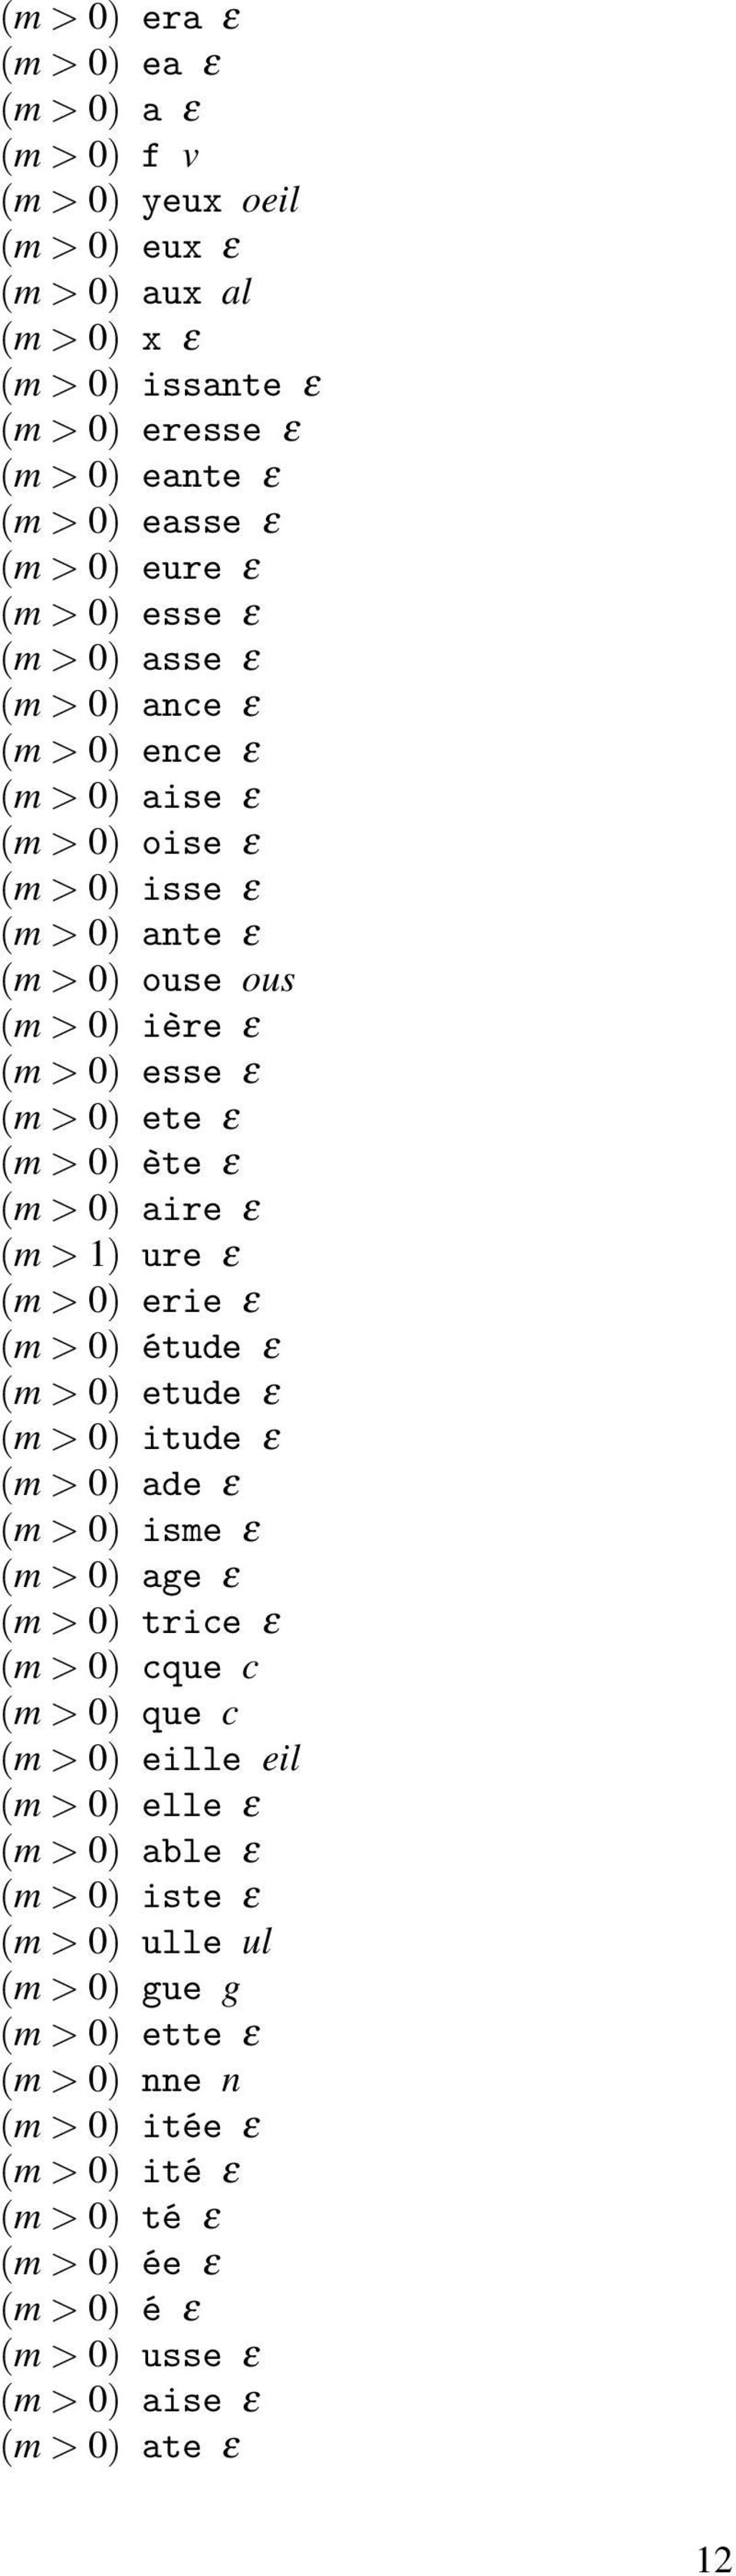 ε (m > 1) ure ε (m > 0) erie ε (m > 0) étude ε (m > 0) etude ε (m > 0) itude ε (m > 0) ade ε (m > 0) isme ε (m > 0) age ε (m > 0) trice ε (m > 0) cque c (m > 0) que c (m > 0) eille eil (m > 0) elle ε